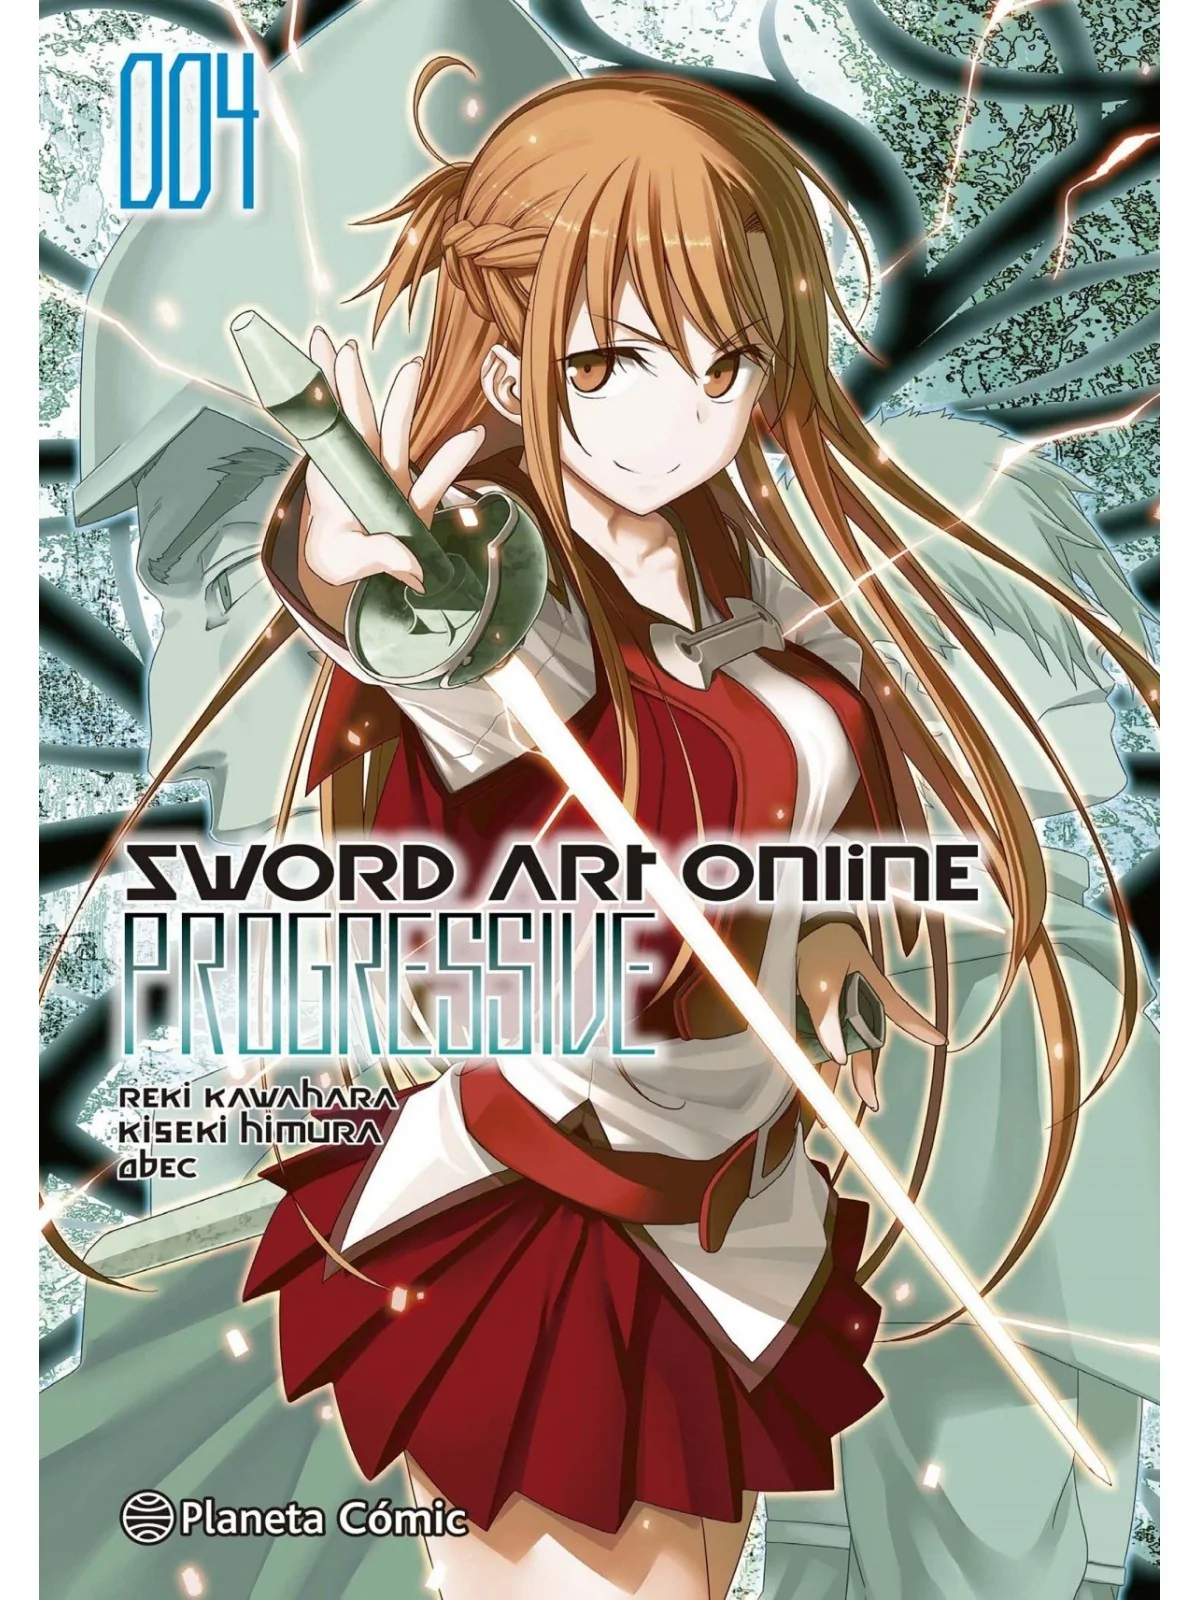 Comprar Sword Art Online Progressive Nº 04/07 barato al mejor precio 9